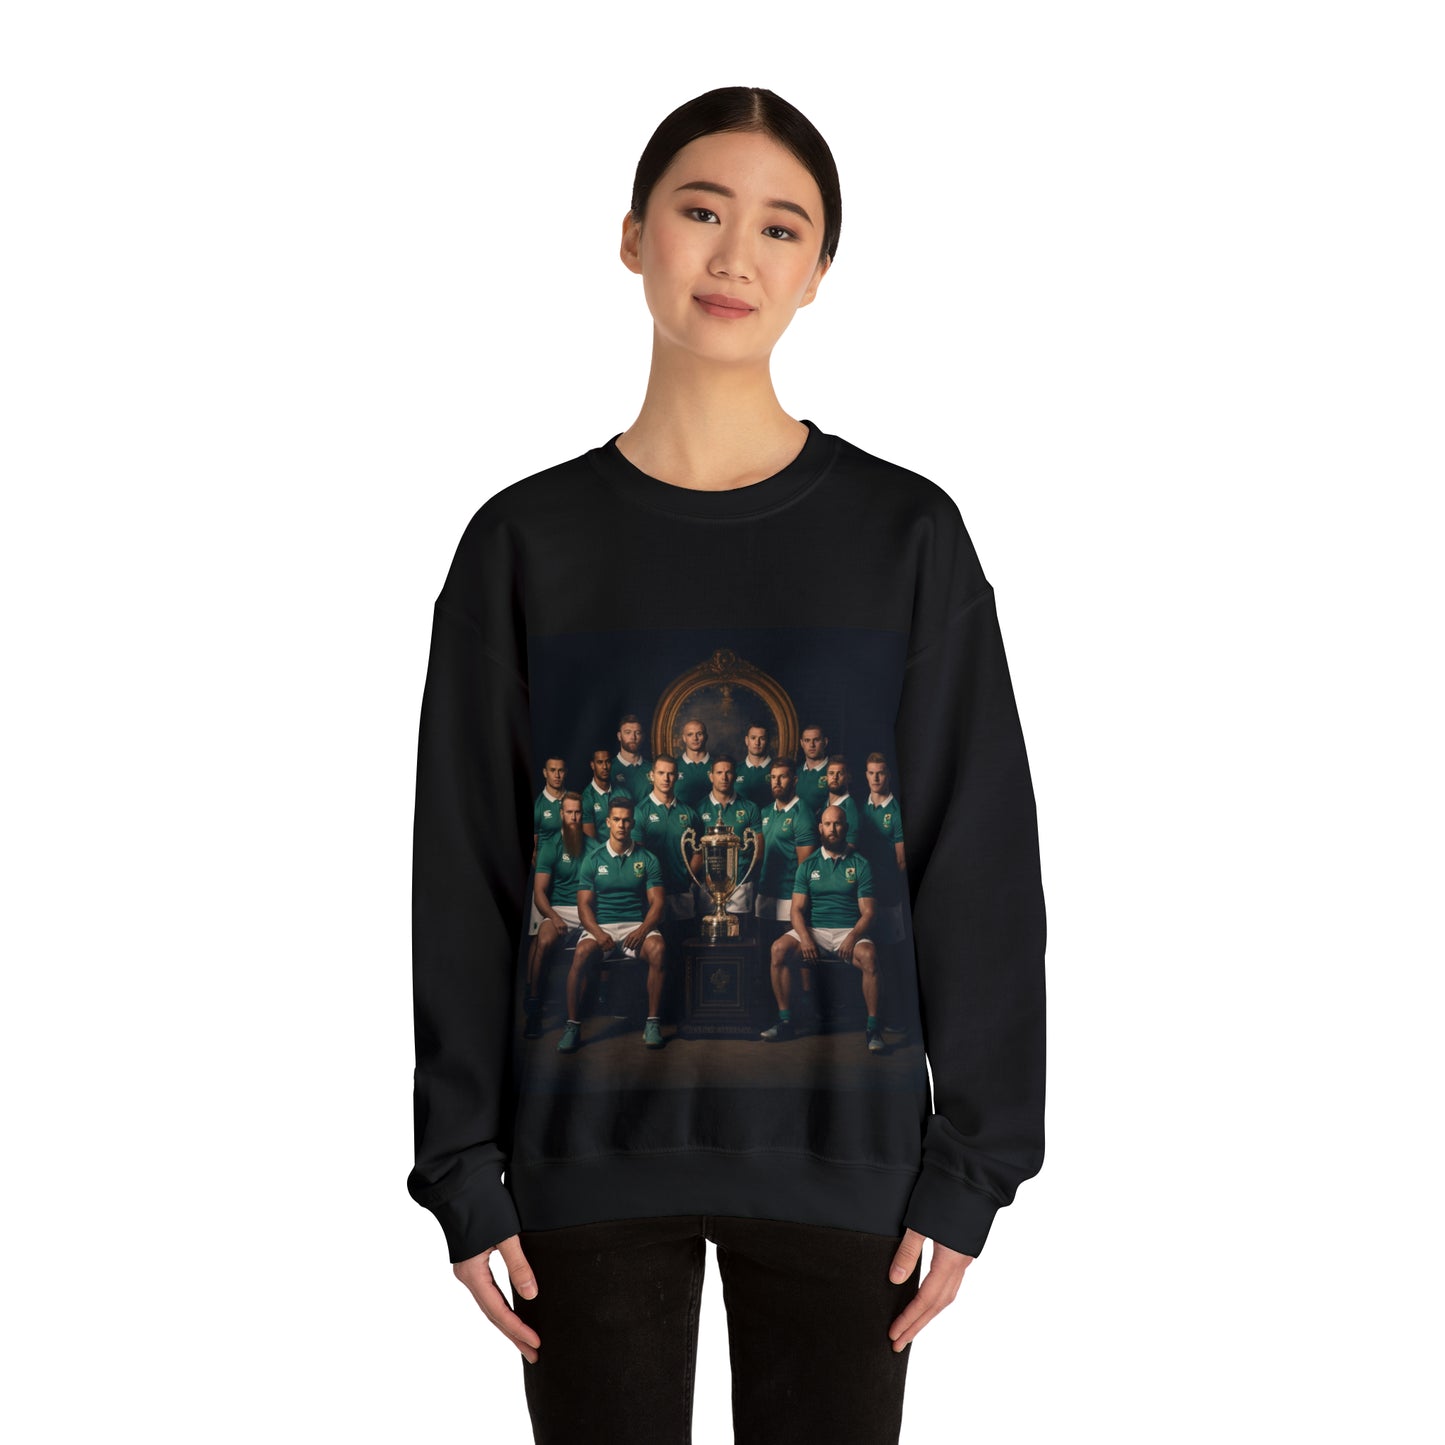 Ireland World Cup photoshoot - black sweatshirt